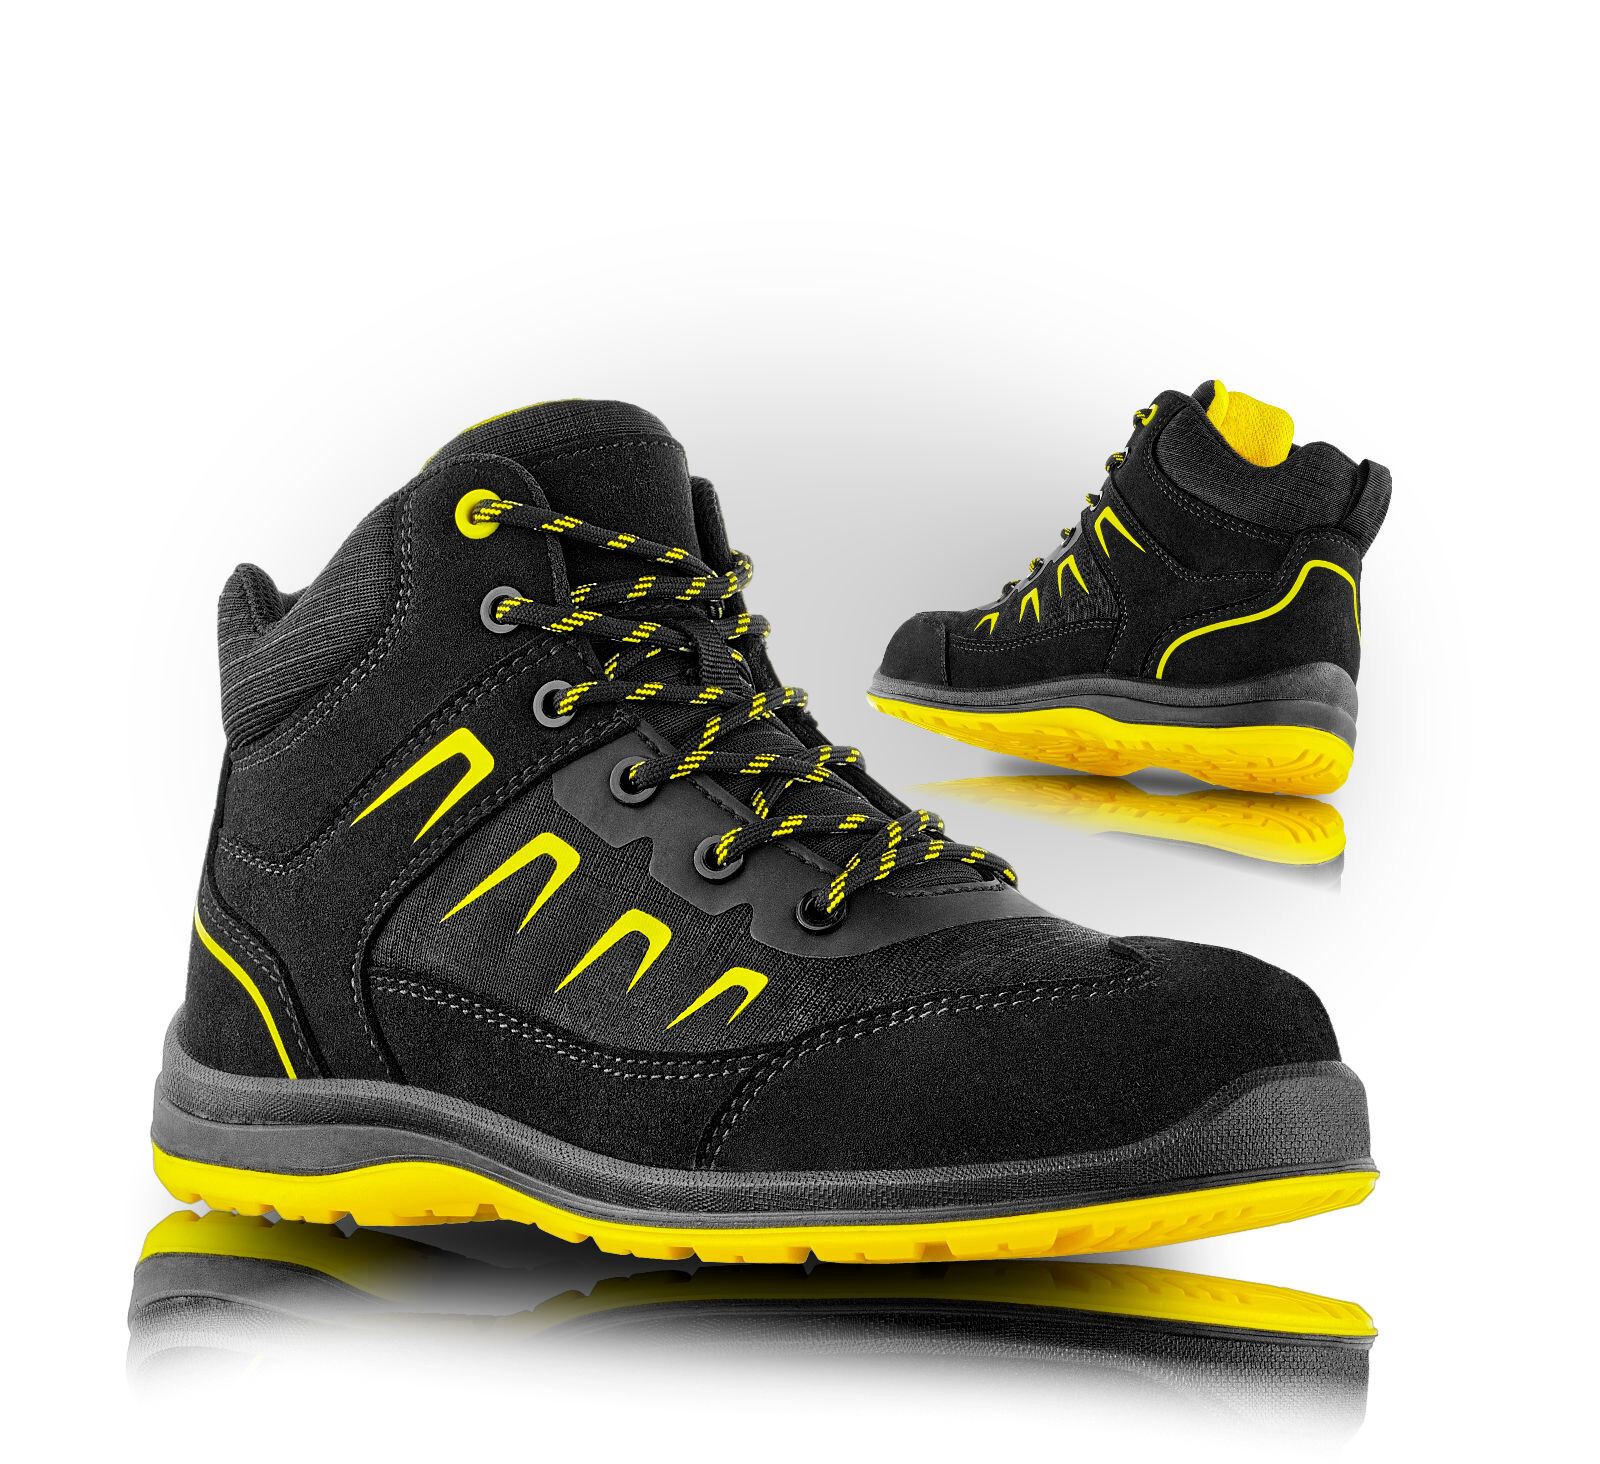 Pracovná členková obuv VM Rhodos ESD O2 FO SRC - veľkosť: 42, farba: čierna/žltá